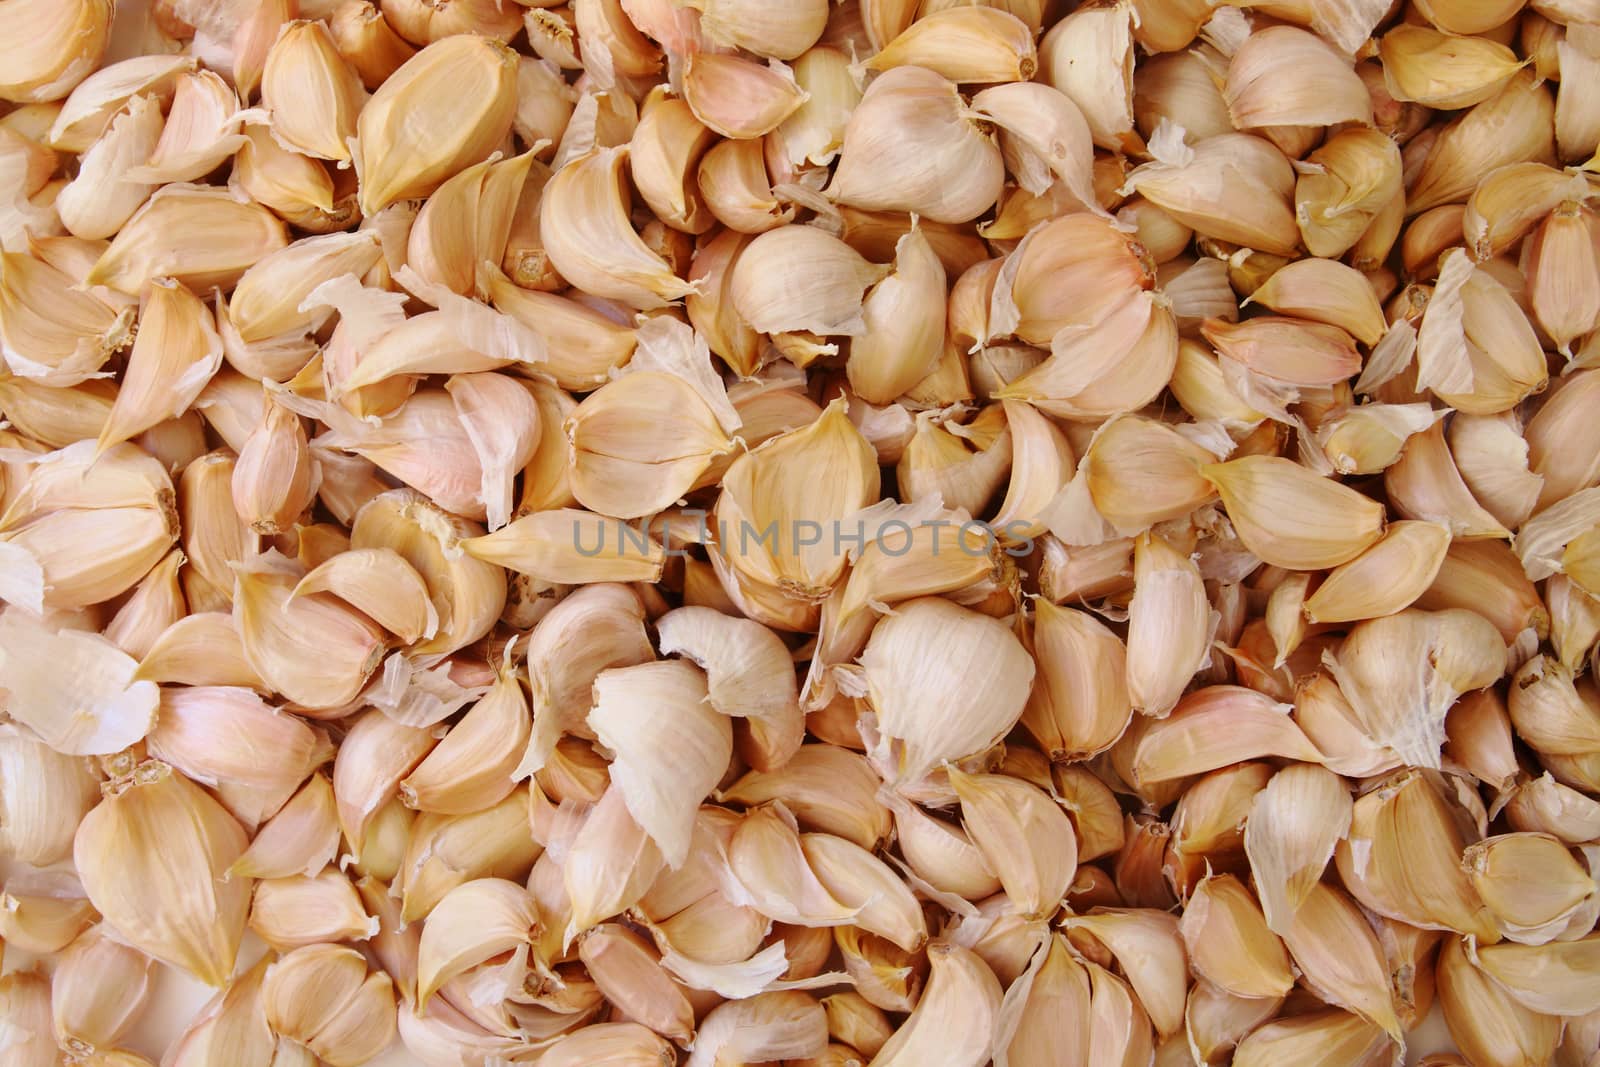 image of garlic pieces .